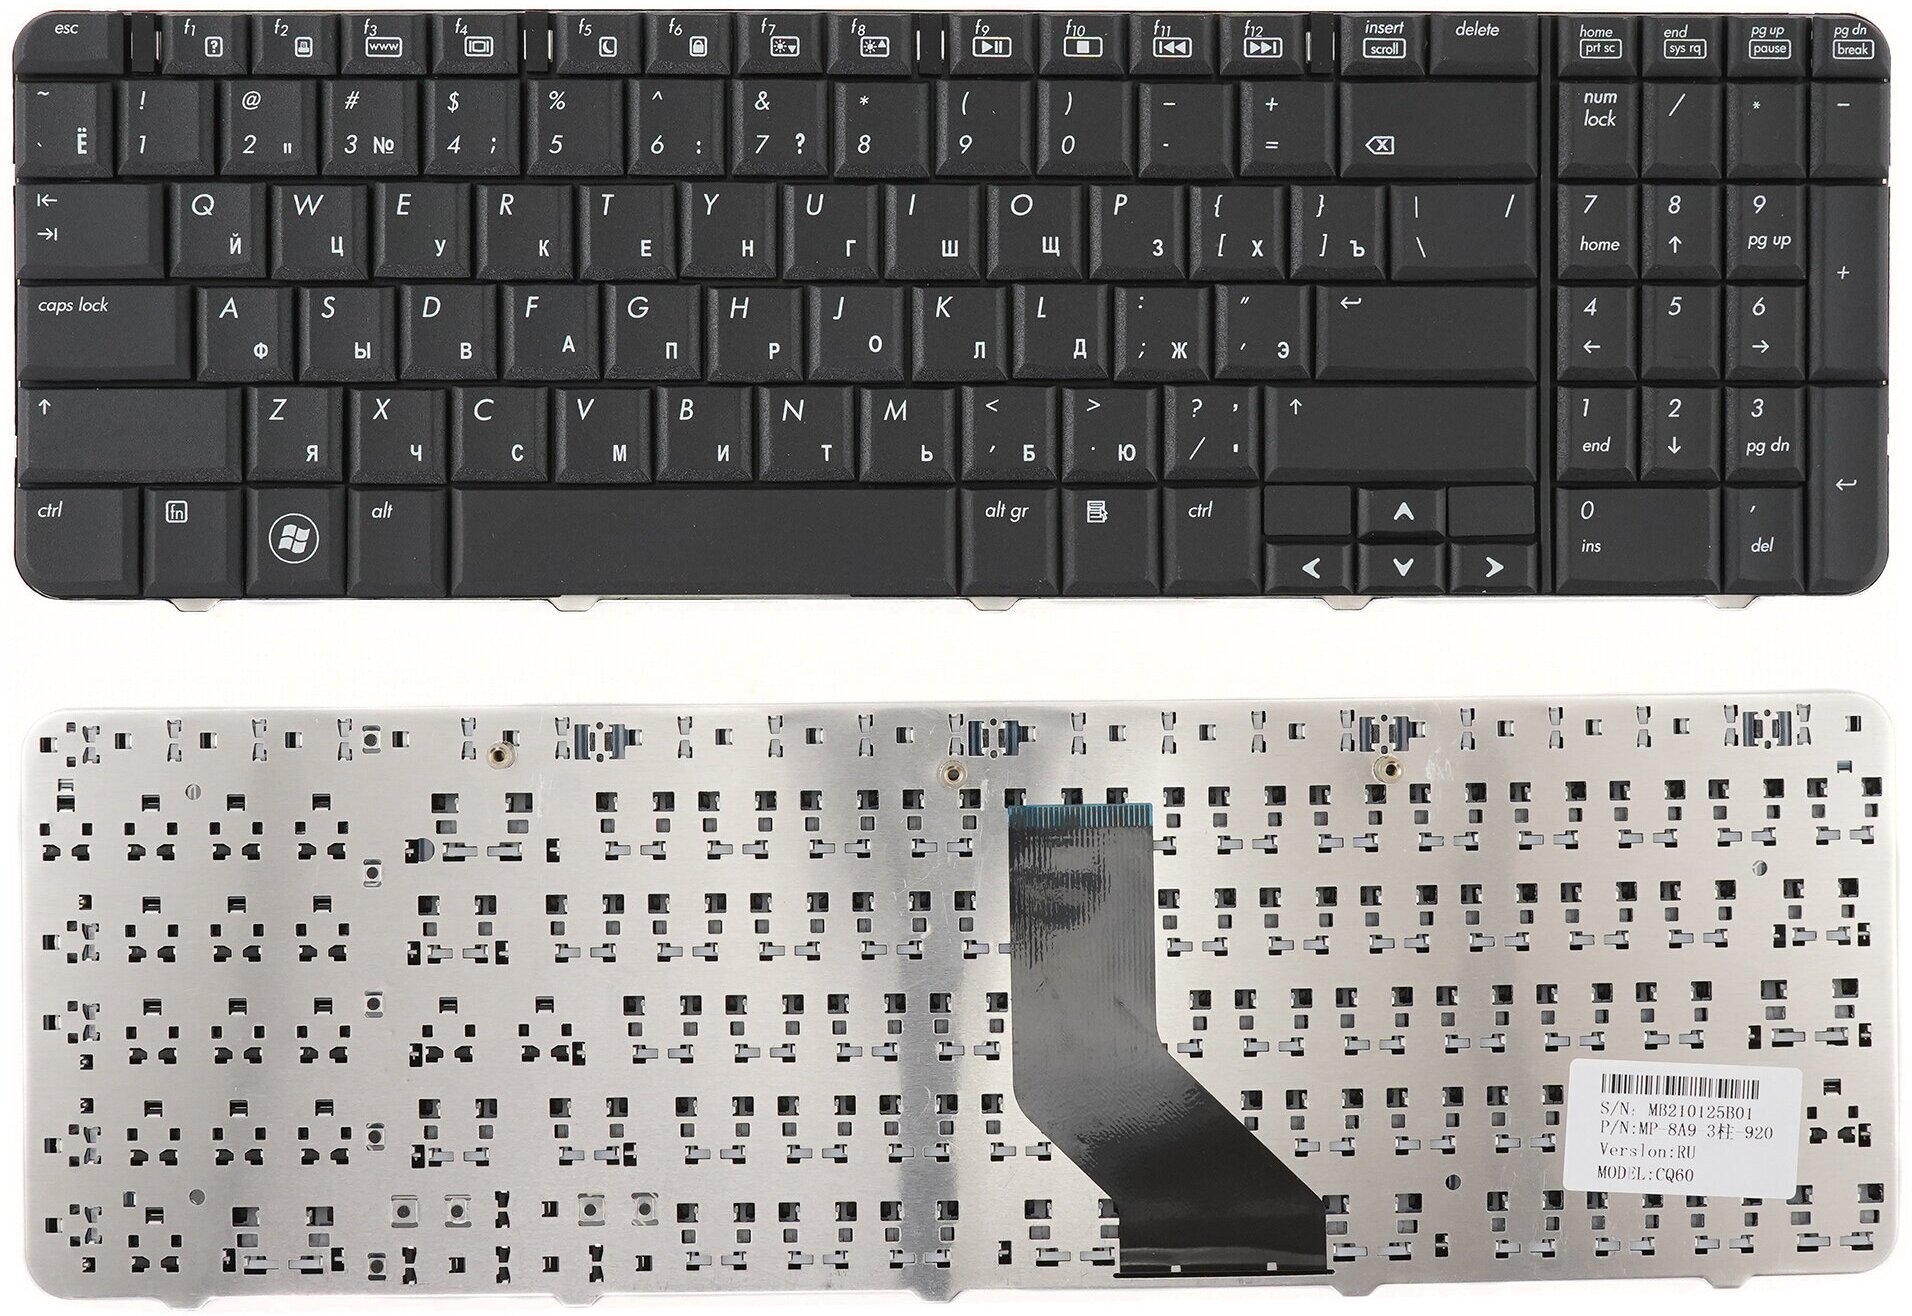 Клавиатура для ноутбука HP Compaq Presario CQ60 черная